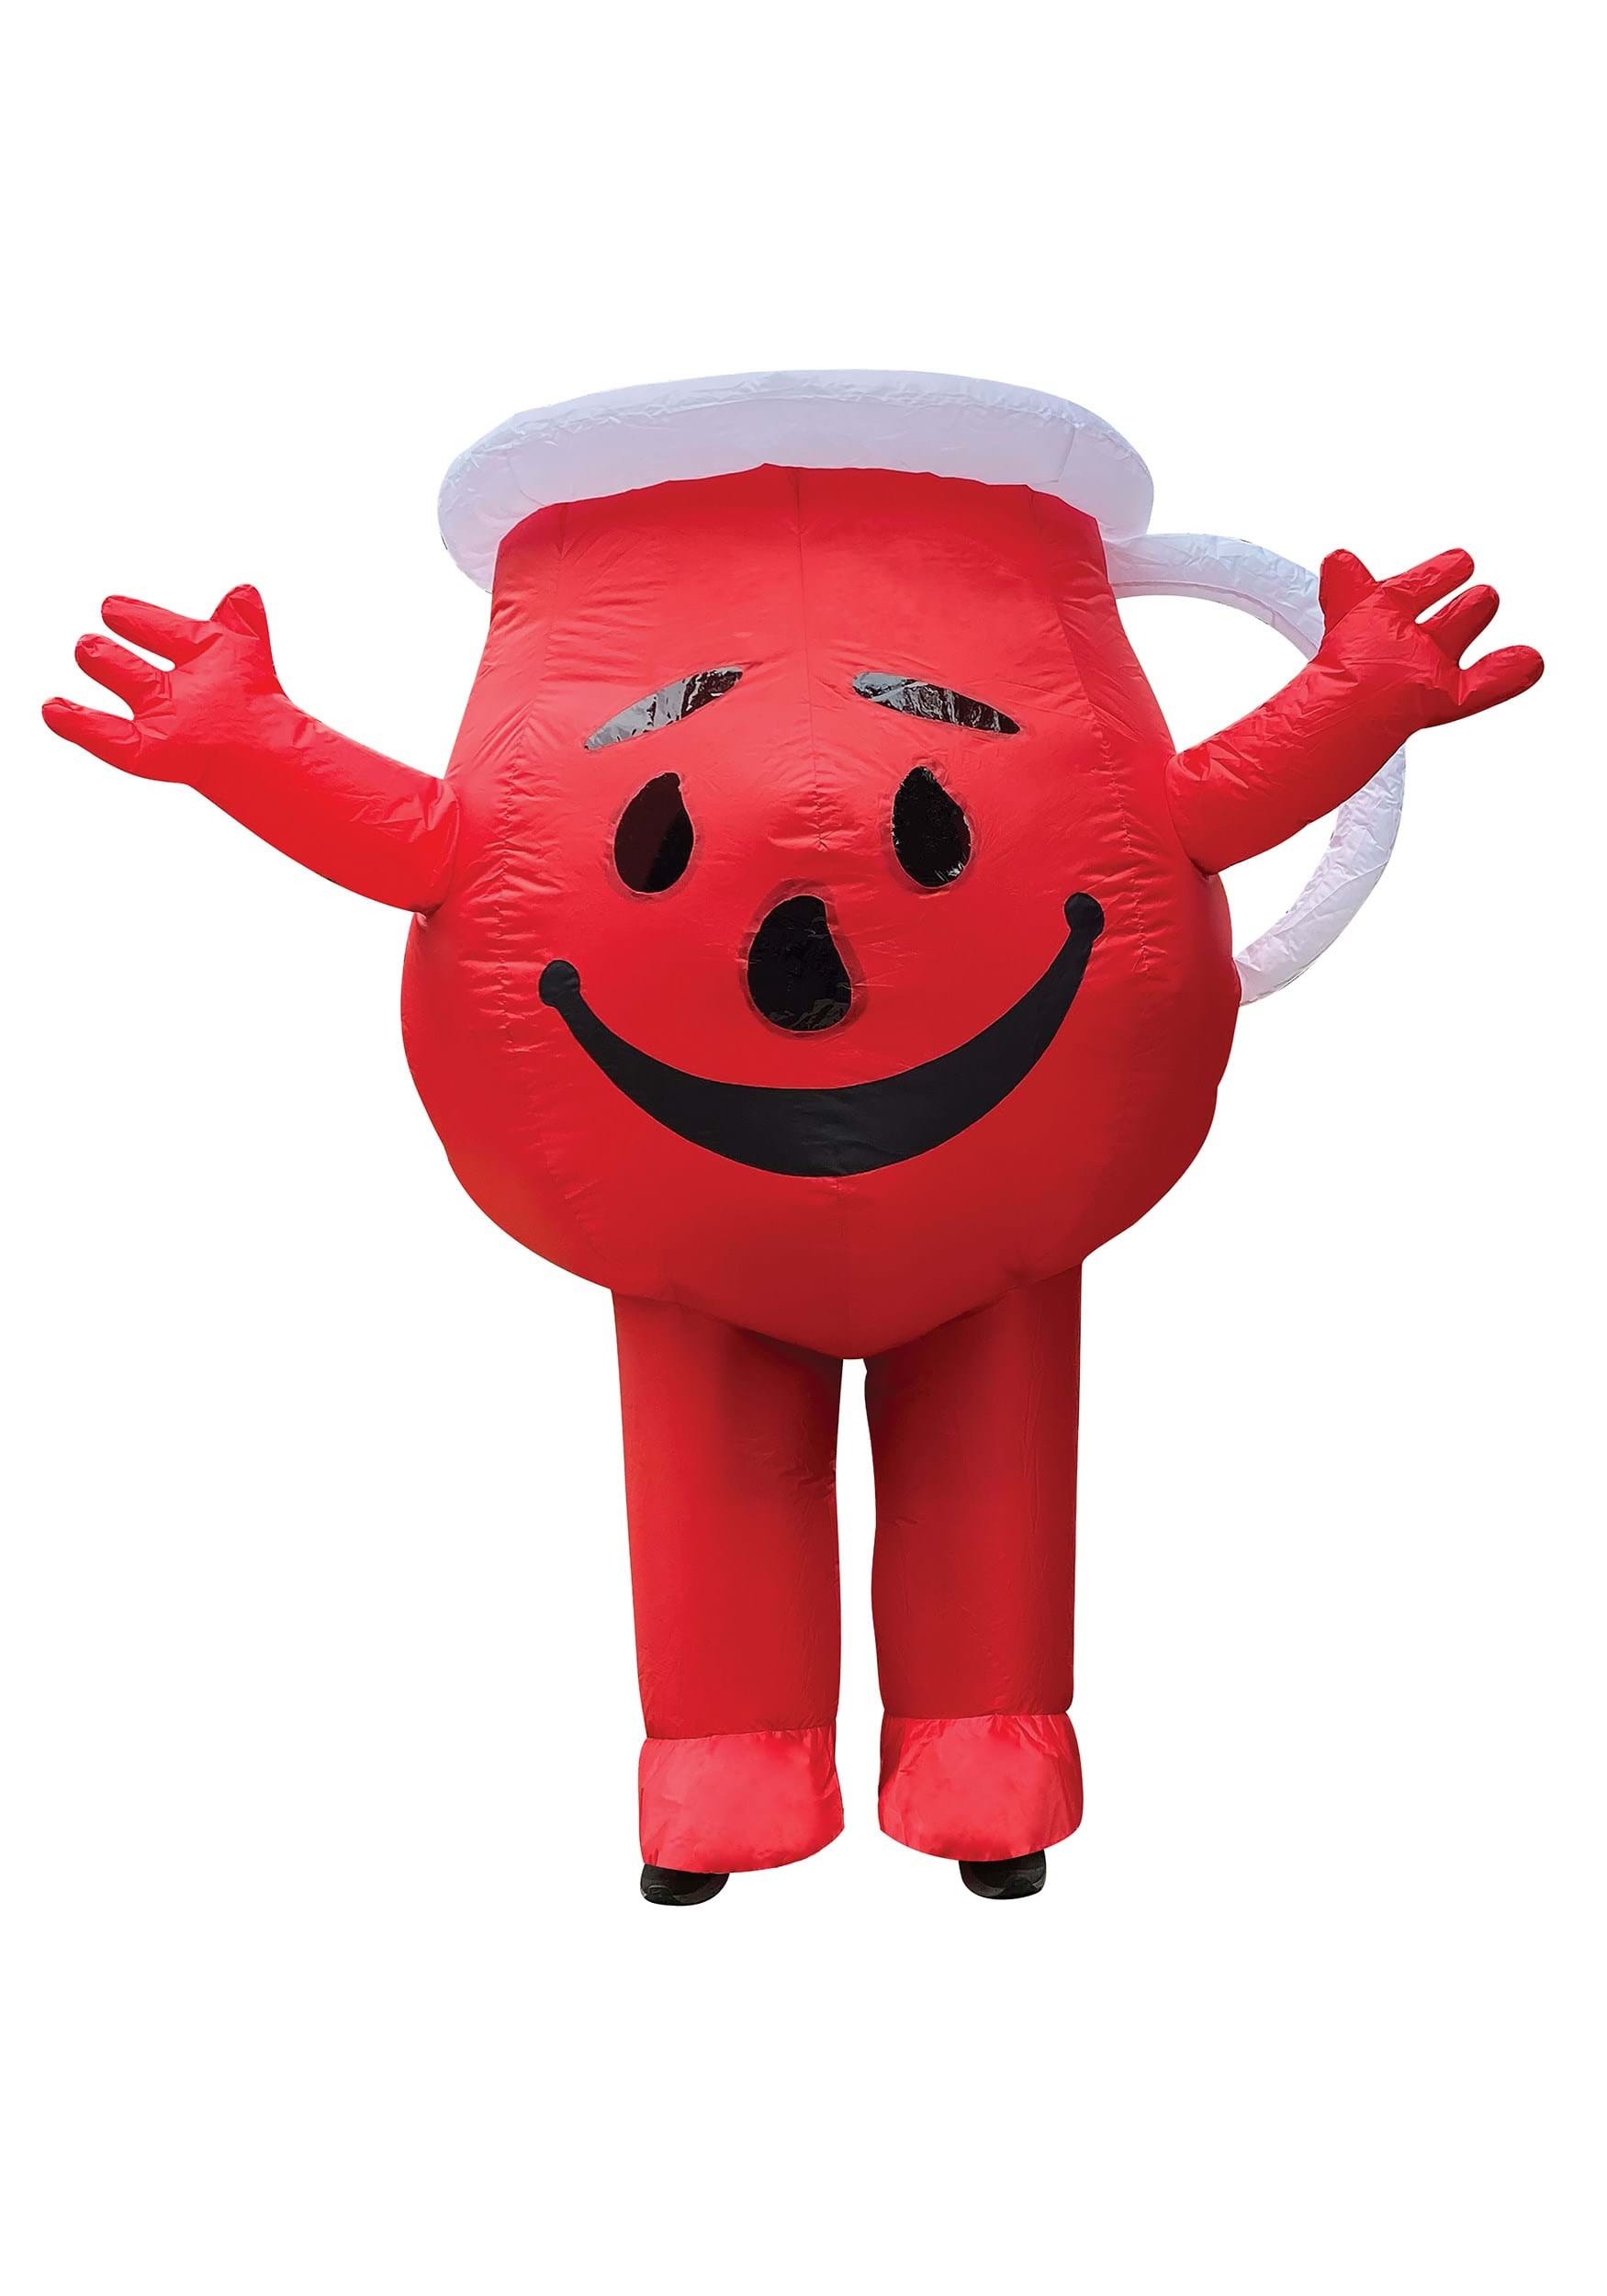 Kool-Aid Adult Inflatable Costume